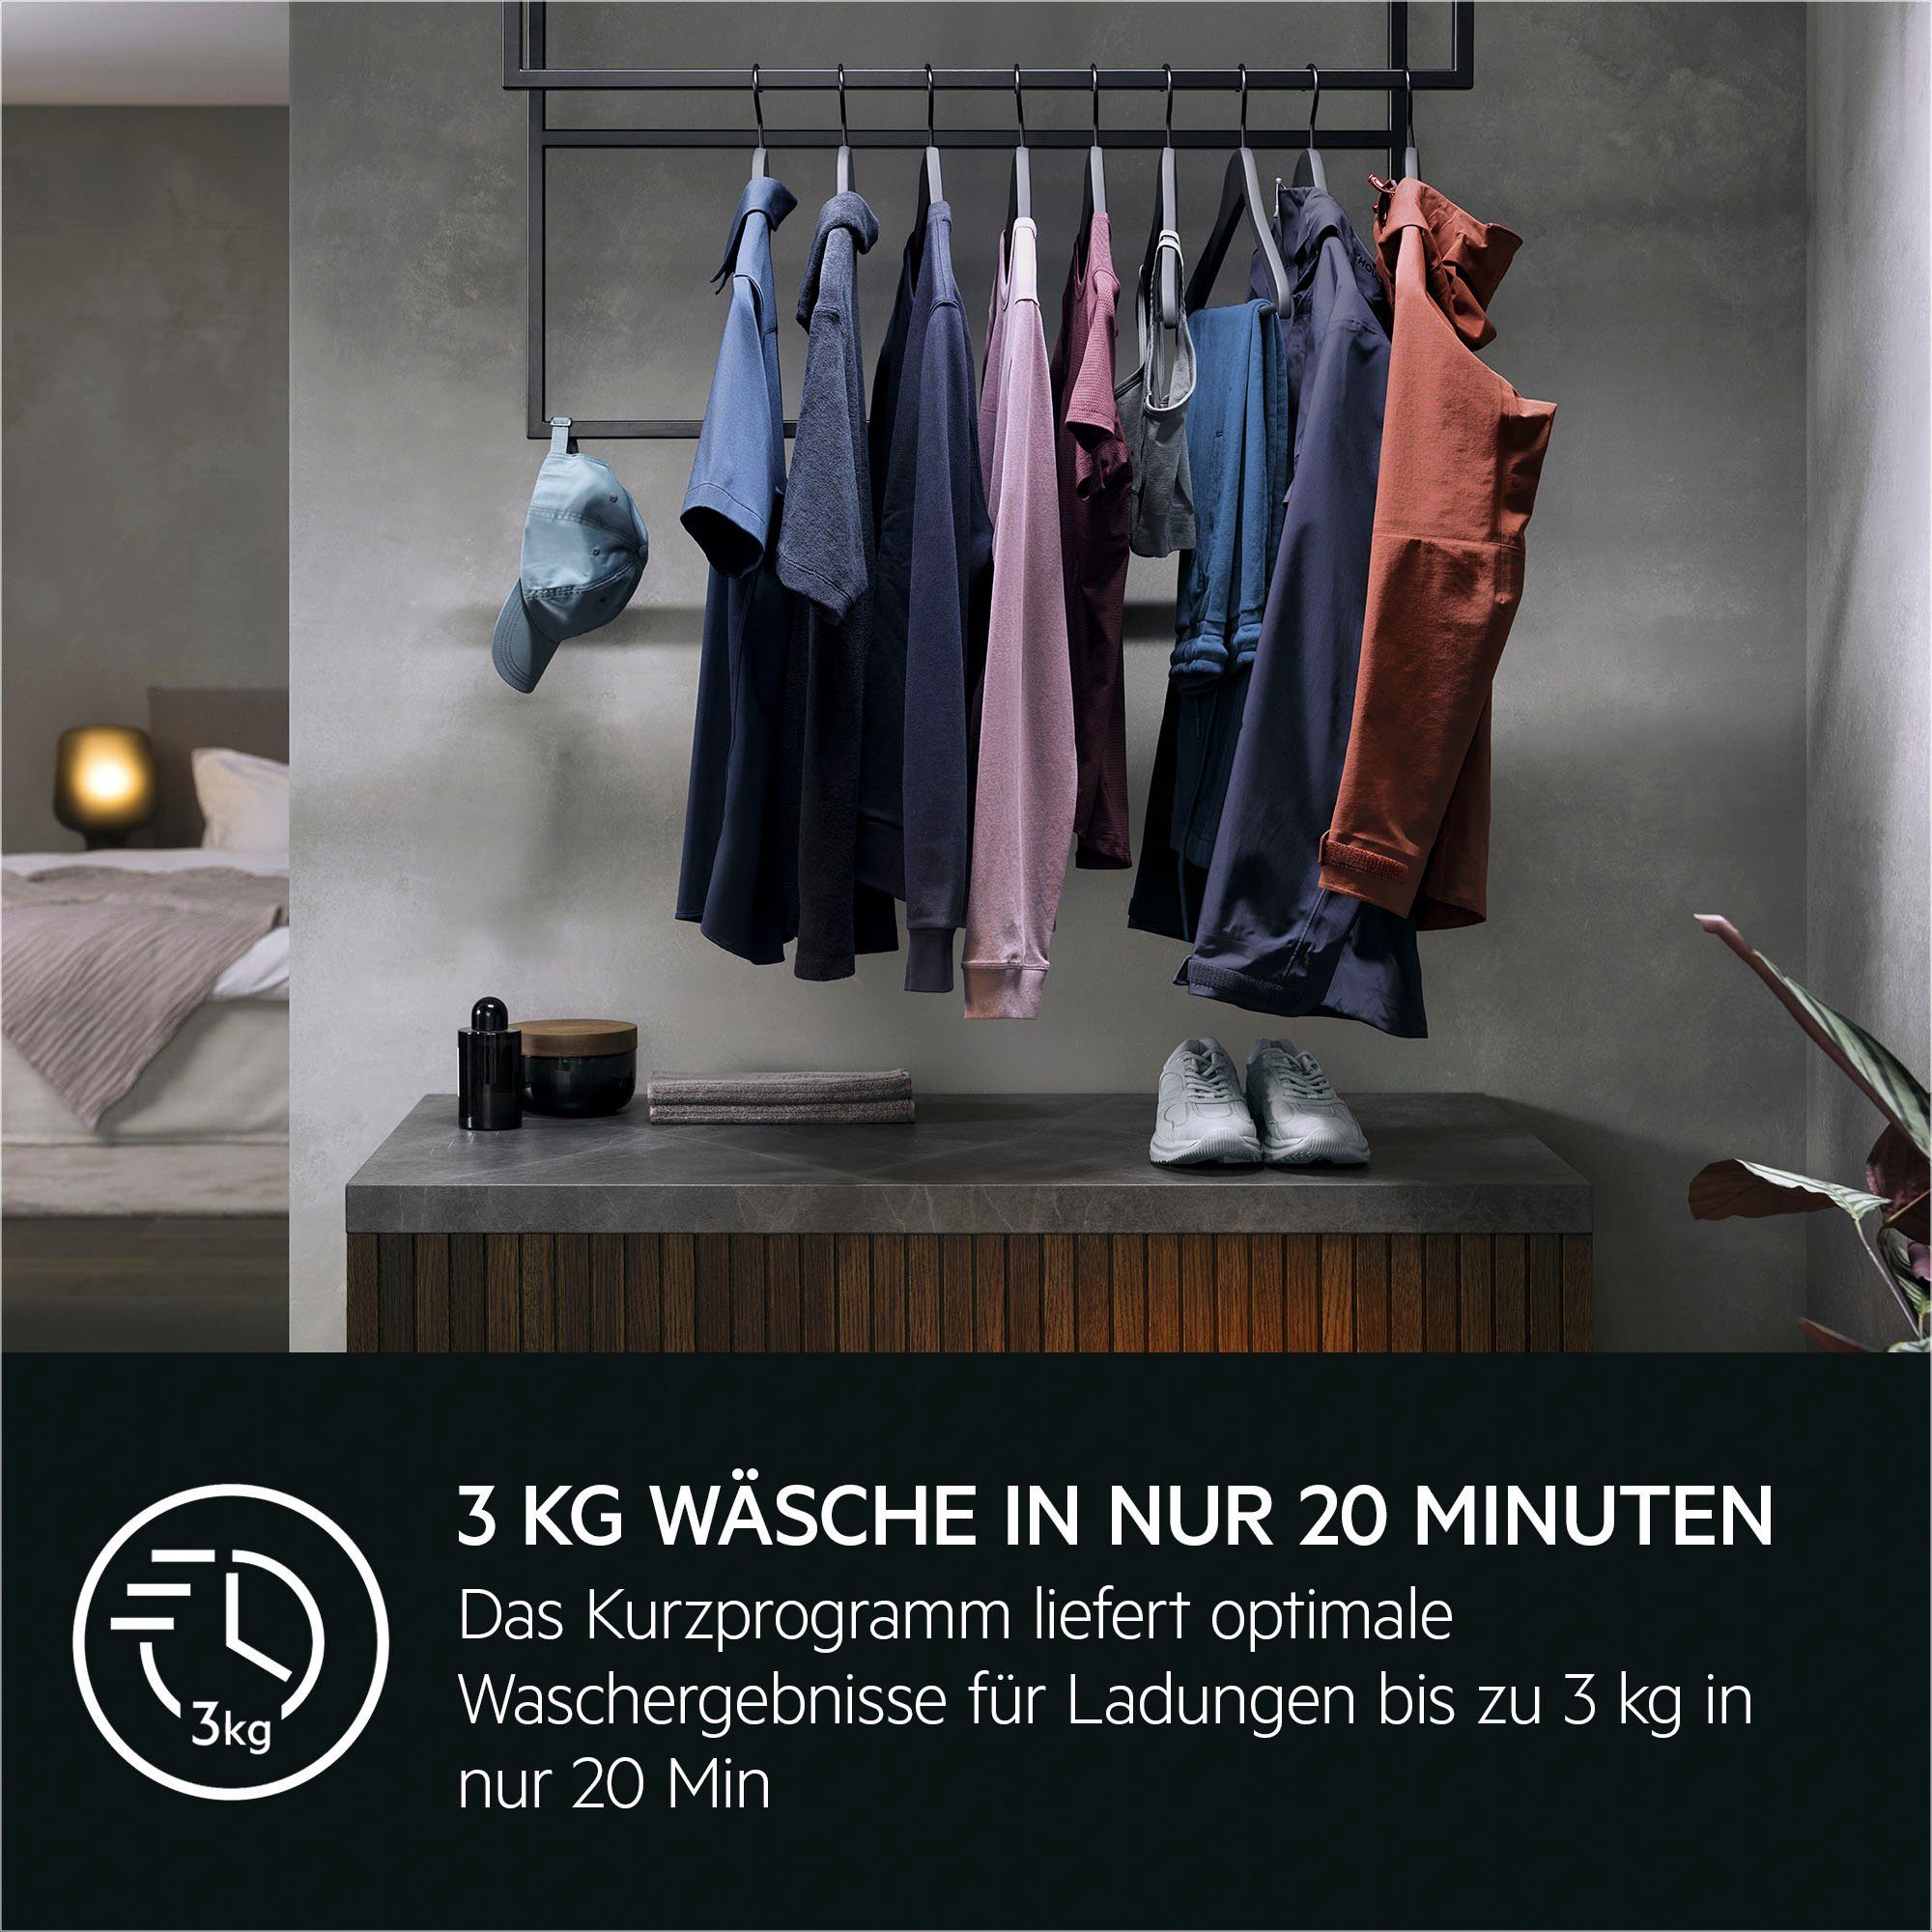 AEG Waschmaschine ProSense® 6000 bis Energie und Zeit, U/min, 1400 8 LR6A648, Mengenautomatik​ Wasser 40% spart kg, 